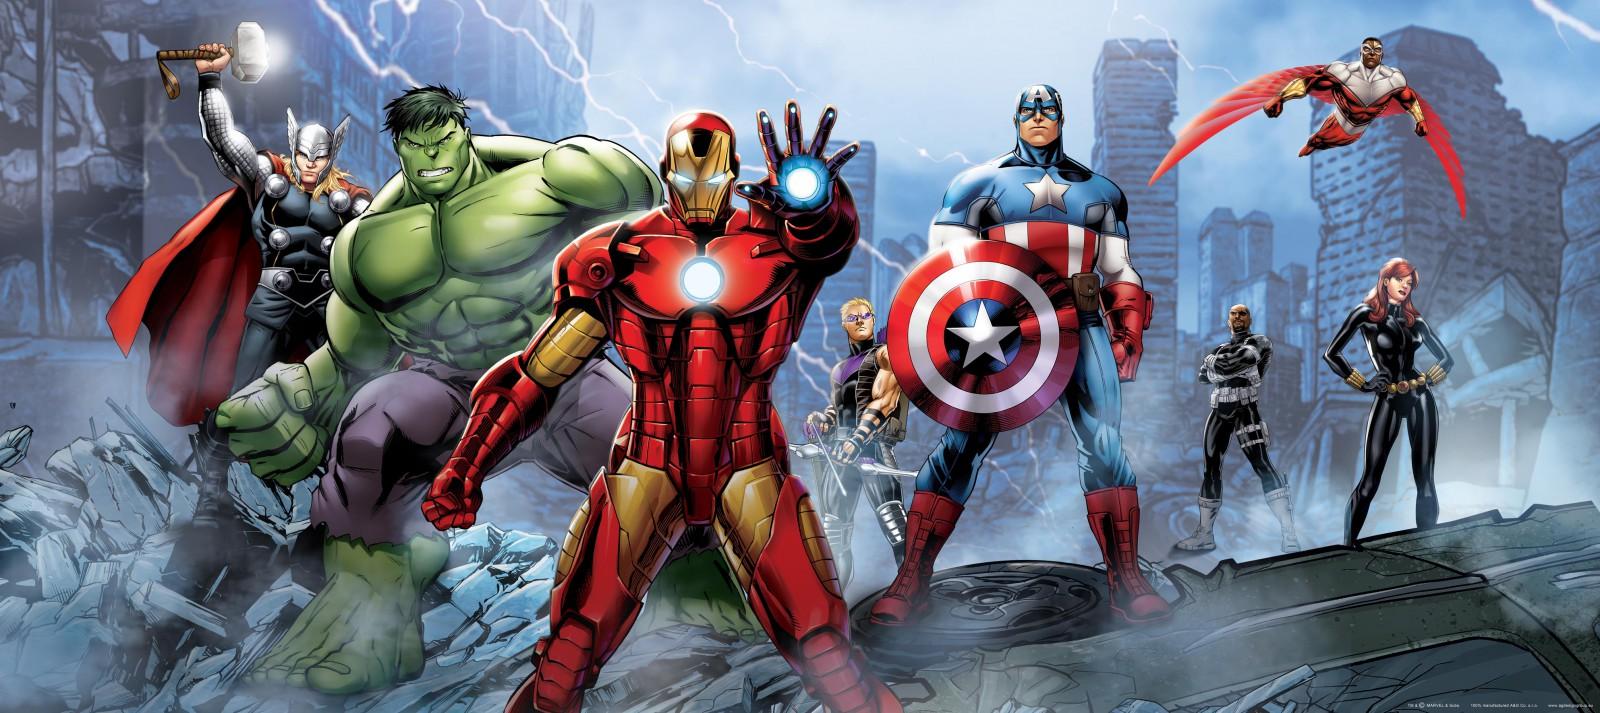 Photo Wallpaper Mural Marvel The Avengers Iron Man 202x90cm